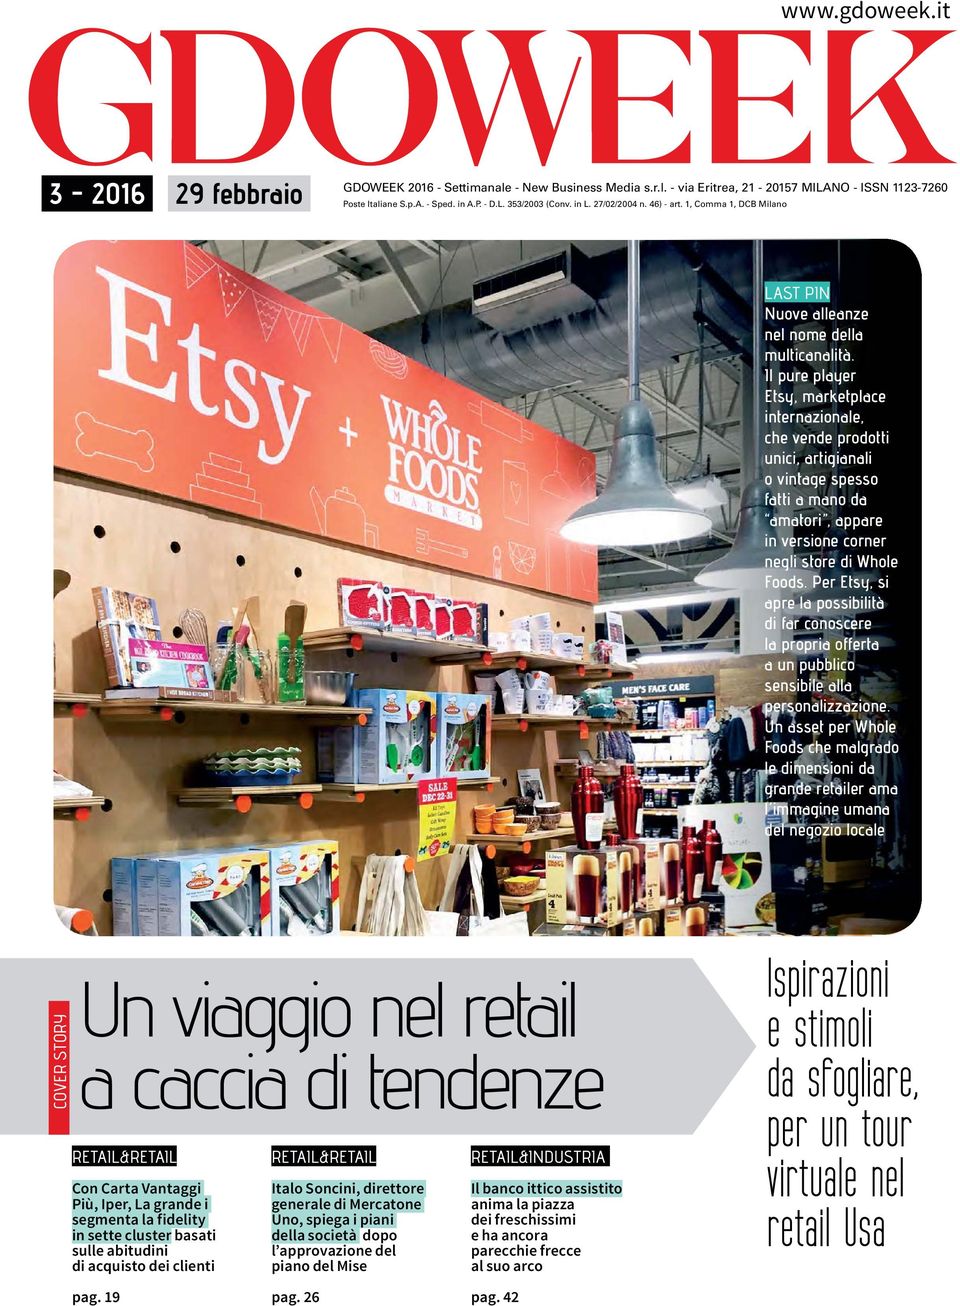 Il pure player Etsy, marketplace internazionale, che vende prodotti unici, artigianali o vintage spesso fatti a mano da amatori, appare in versione corner negli store di Whole Foods.